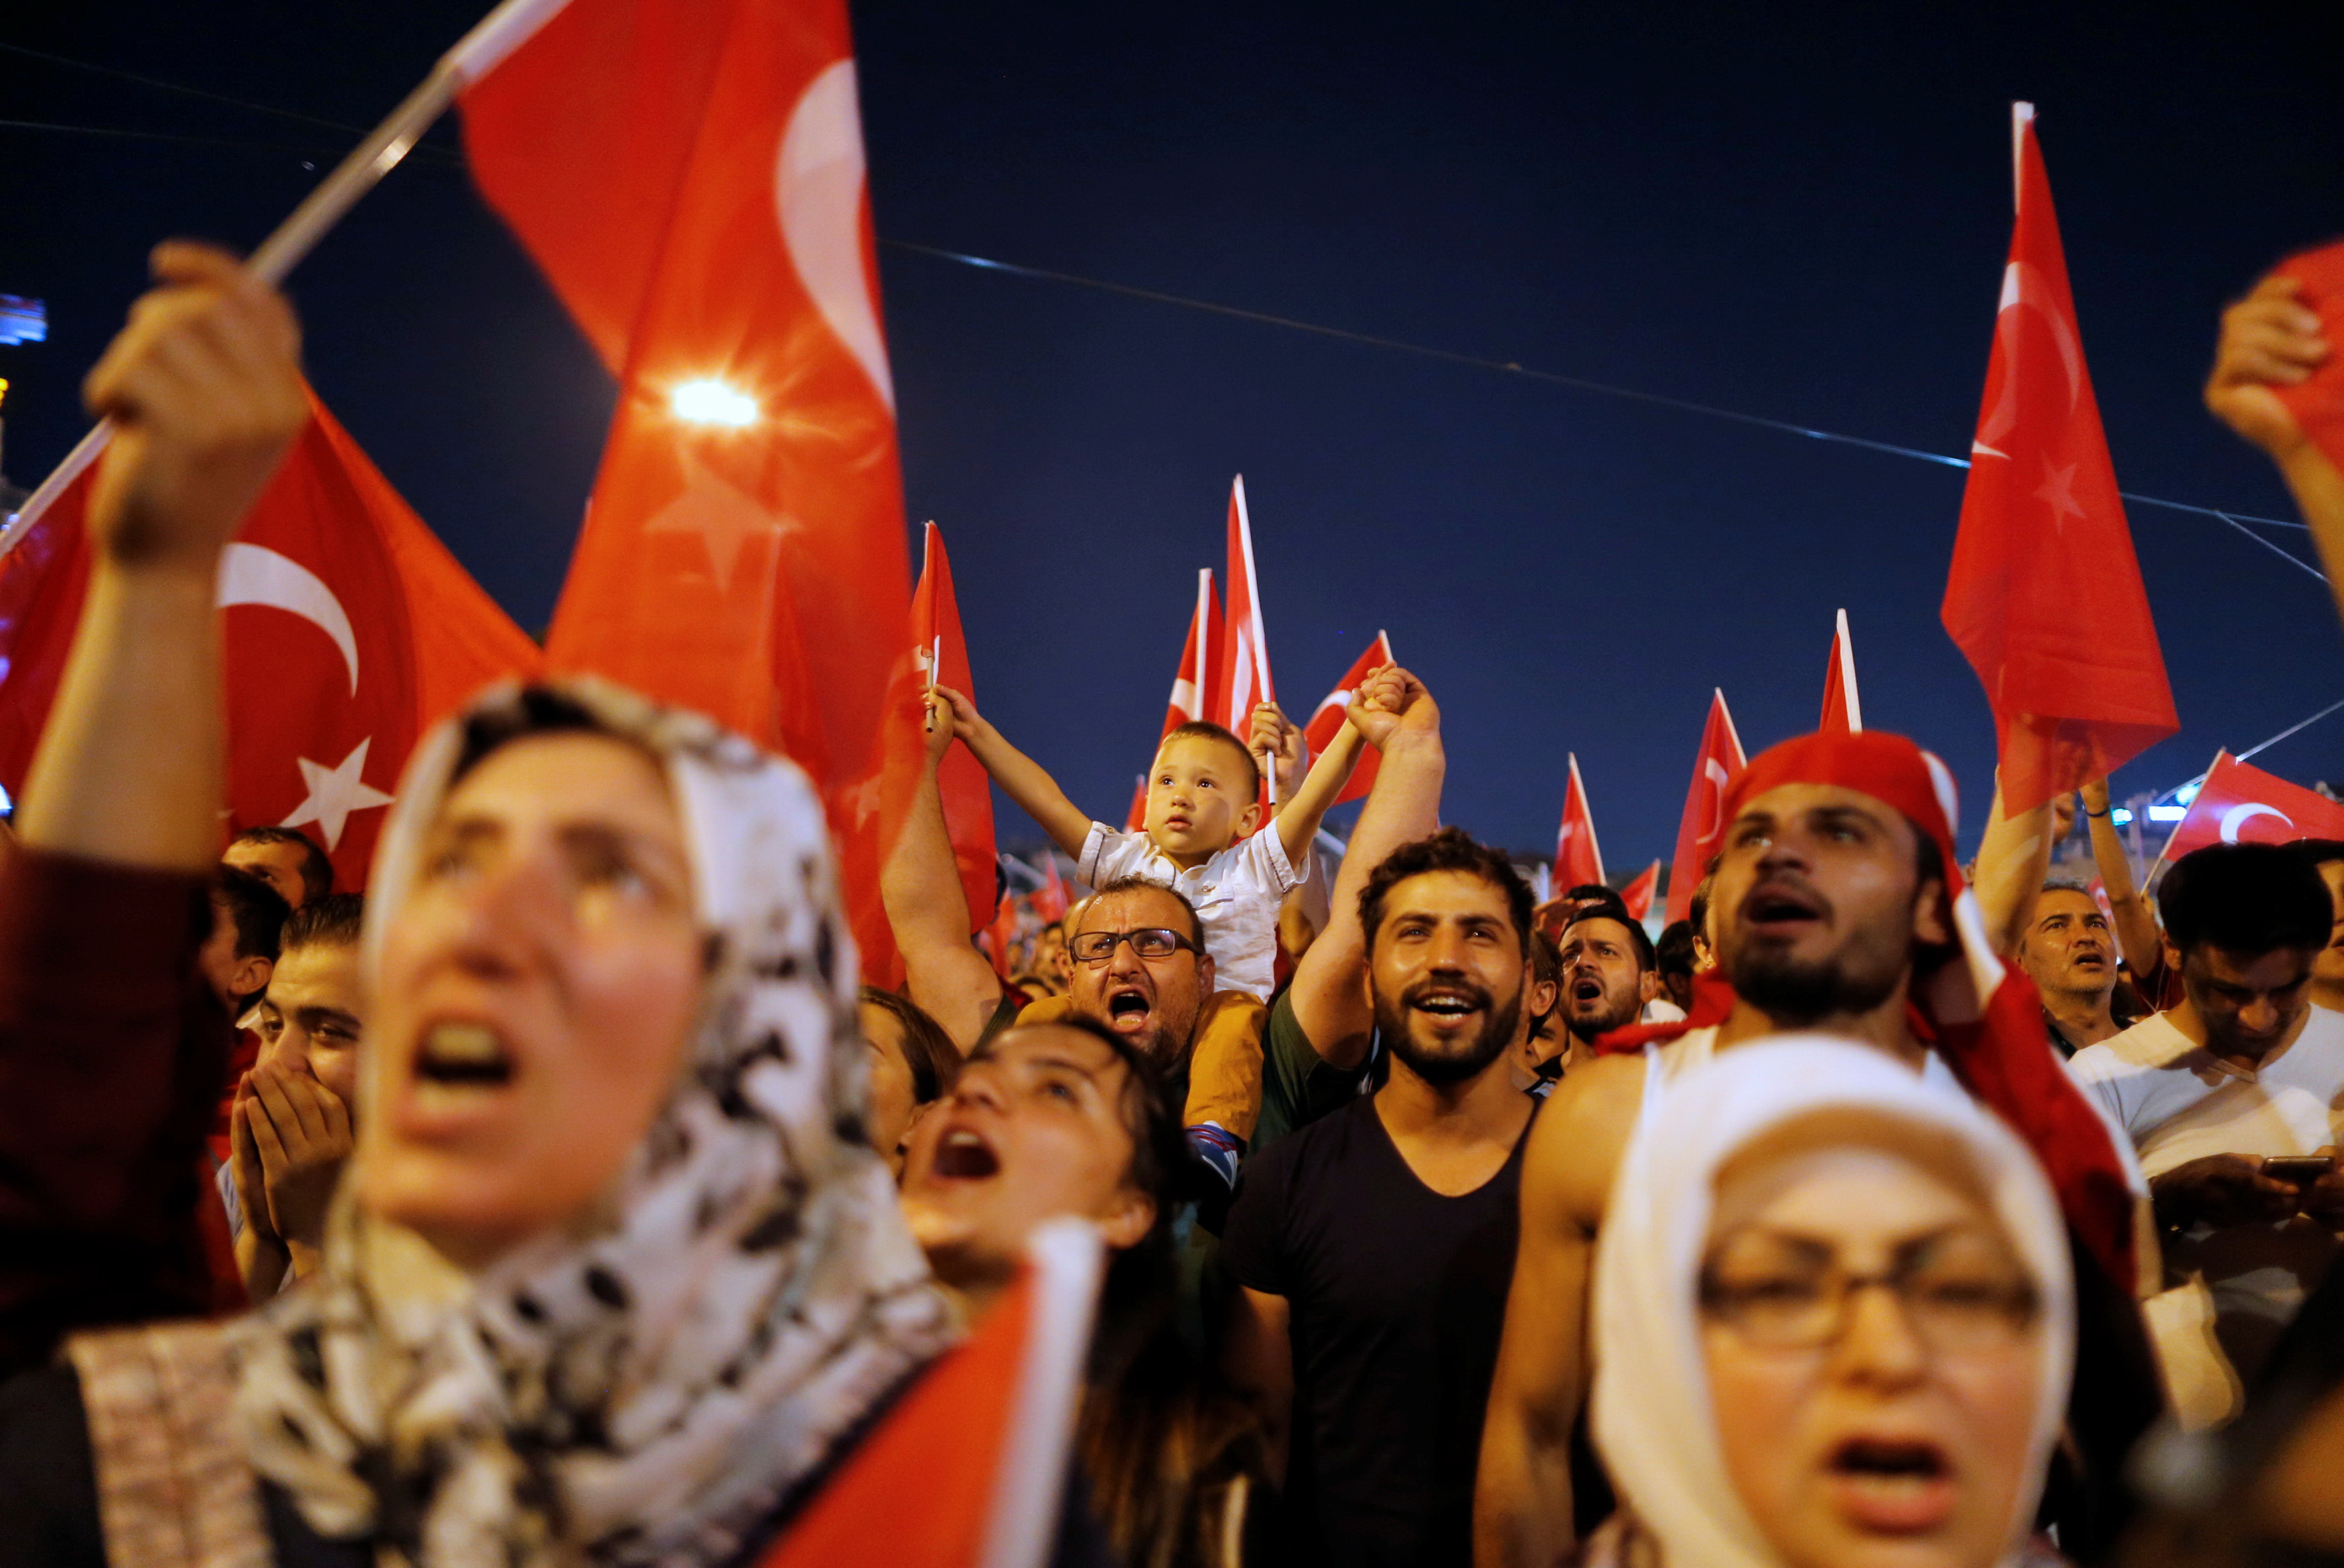 Nhiều người dân Thổ Nhĩ Kỳ, gồm cả phụ nữ và trẻ em, xuống đường ủng hộ Tổng thống Erdogan ở quảng trường Taksim, trung tâm thành phố Istanbul tối 16-7 - Ảnh: Reuters